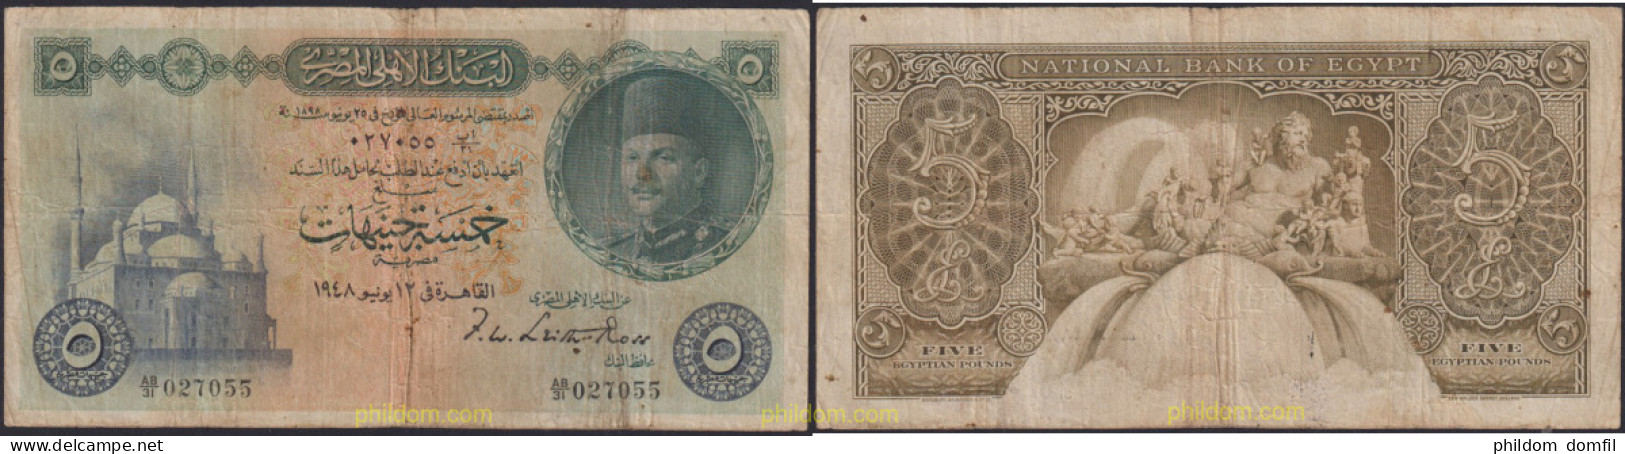 1267 EGIPTO 1951 EGYPT 5 POUNDS 1951 - Egipto